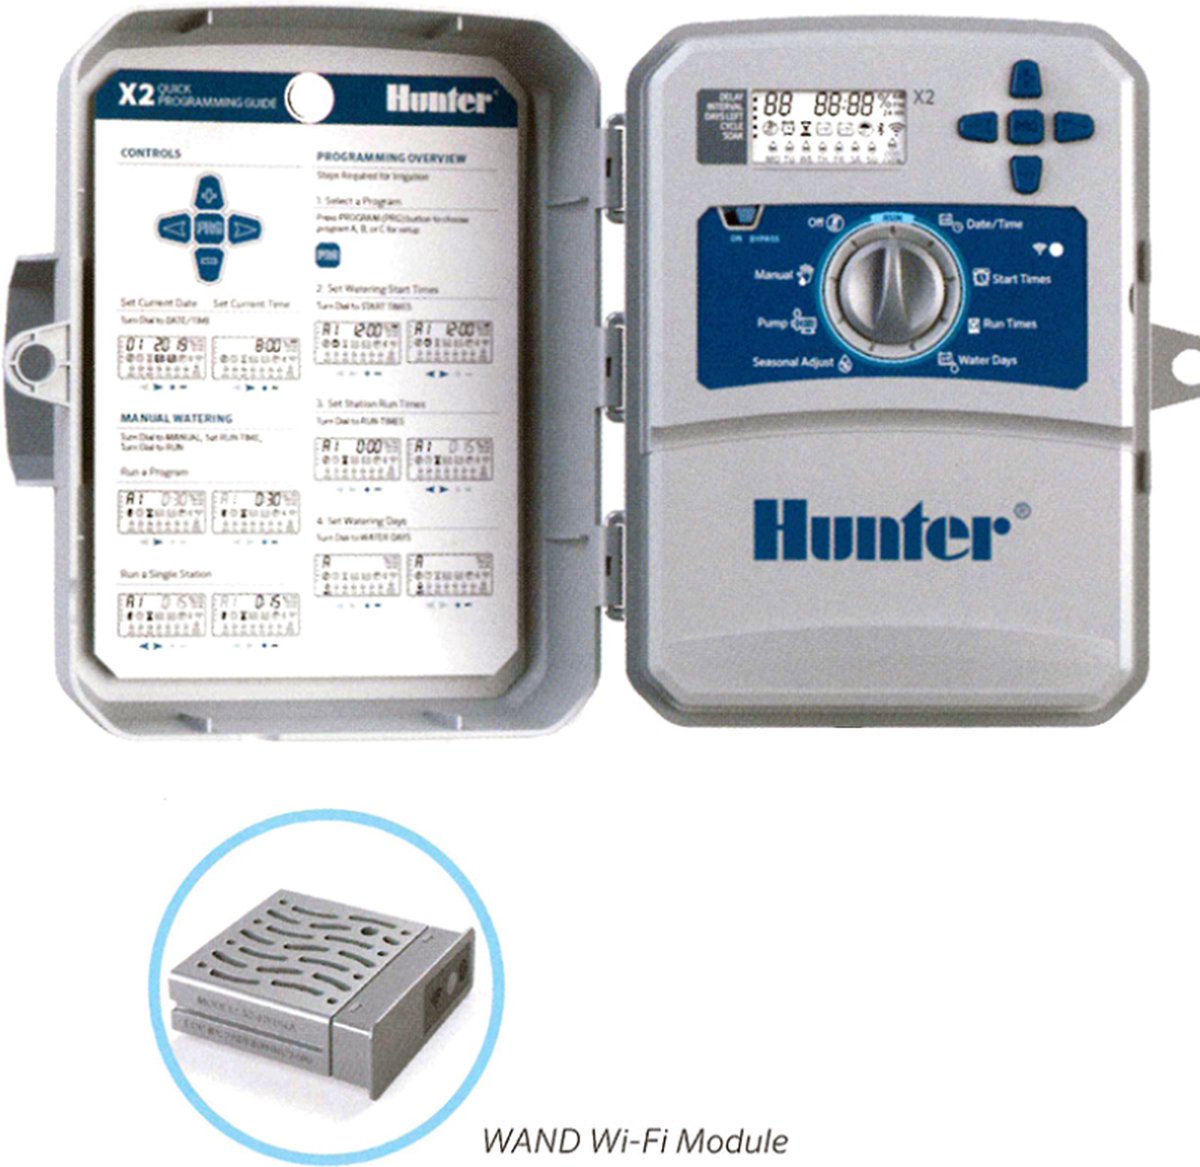 Hunter - besproeiingscomputer - X2-Core 401 (buitenmodel IP44) - 4 stations - 3 programma's met elk 4 start tijden